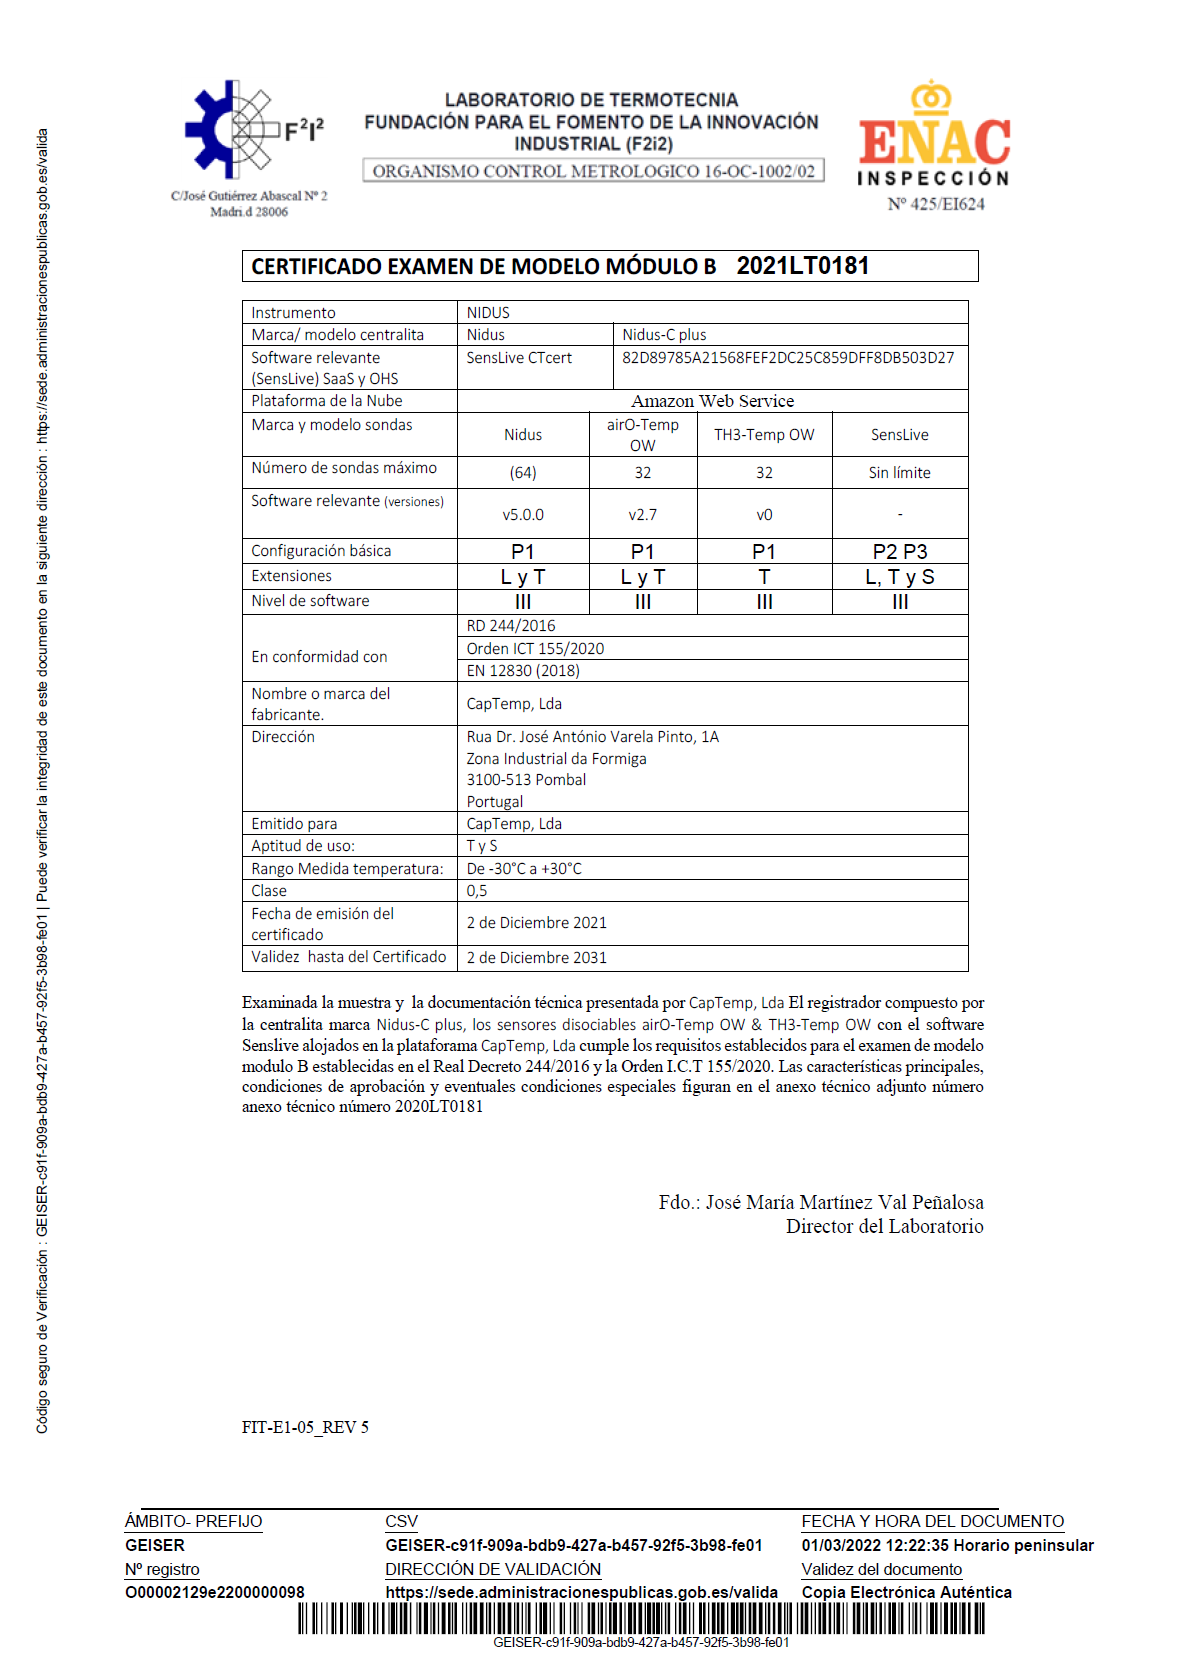 Certificado examen de modelo módulo B nº 2021LT0181